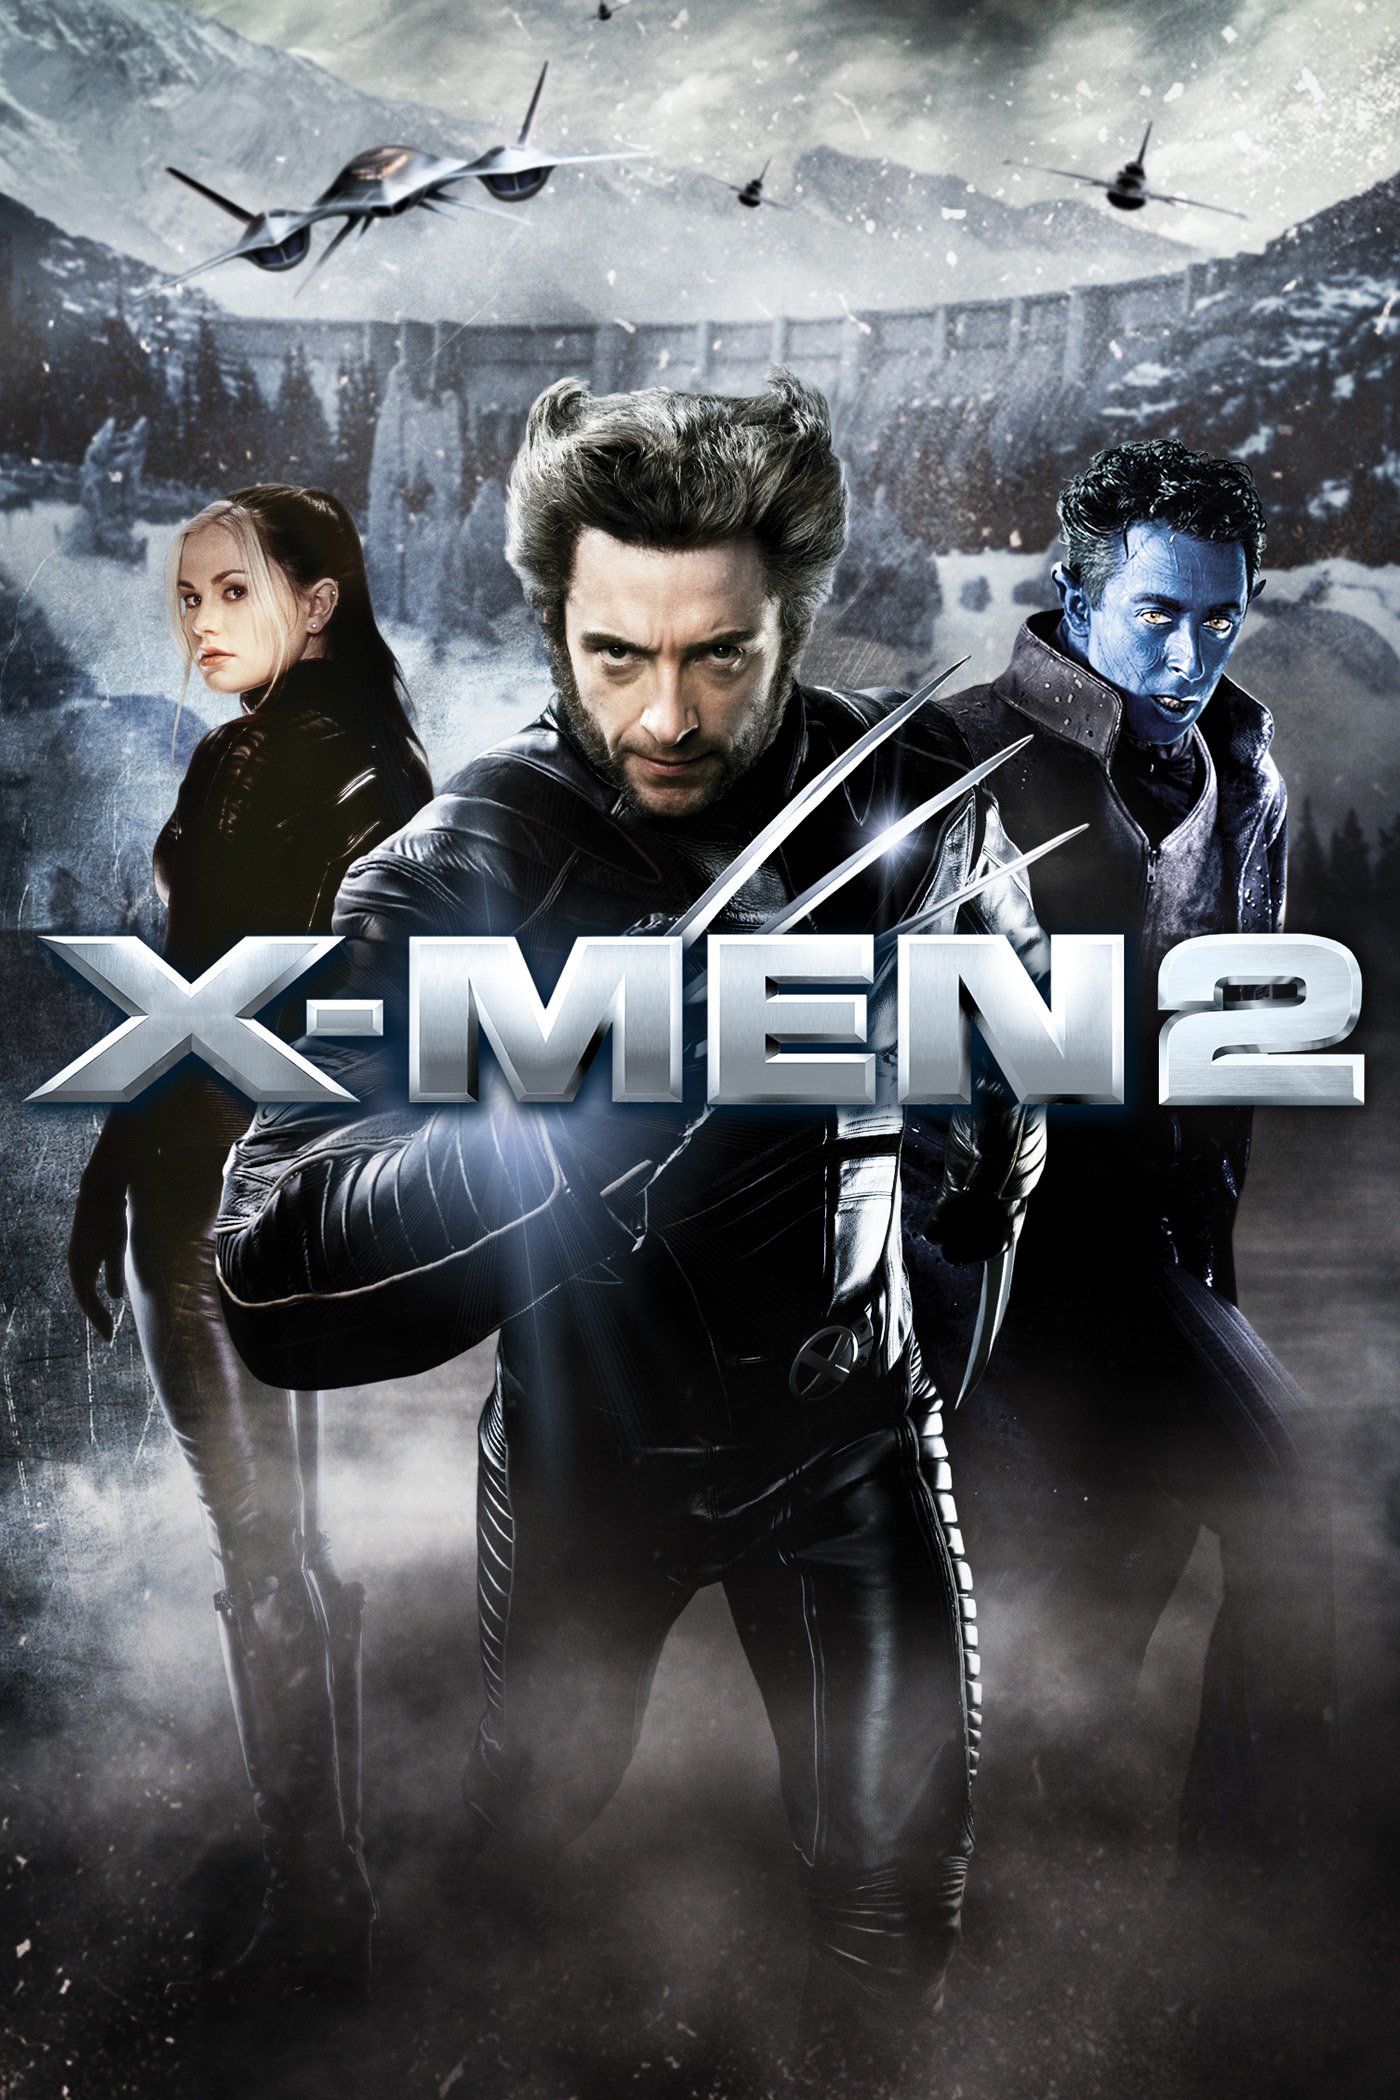 Plakat von "X-Men 2"